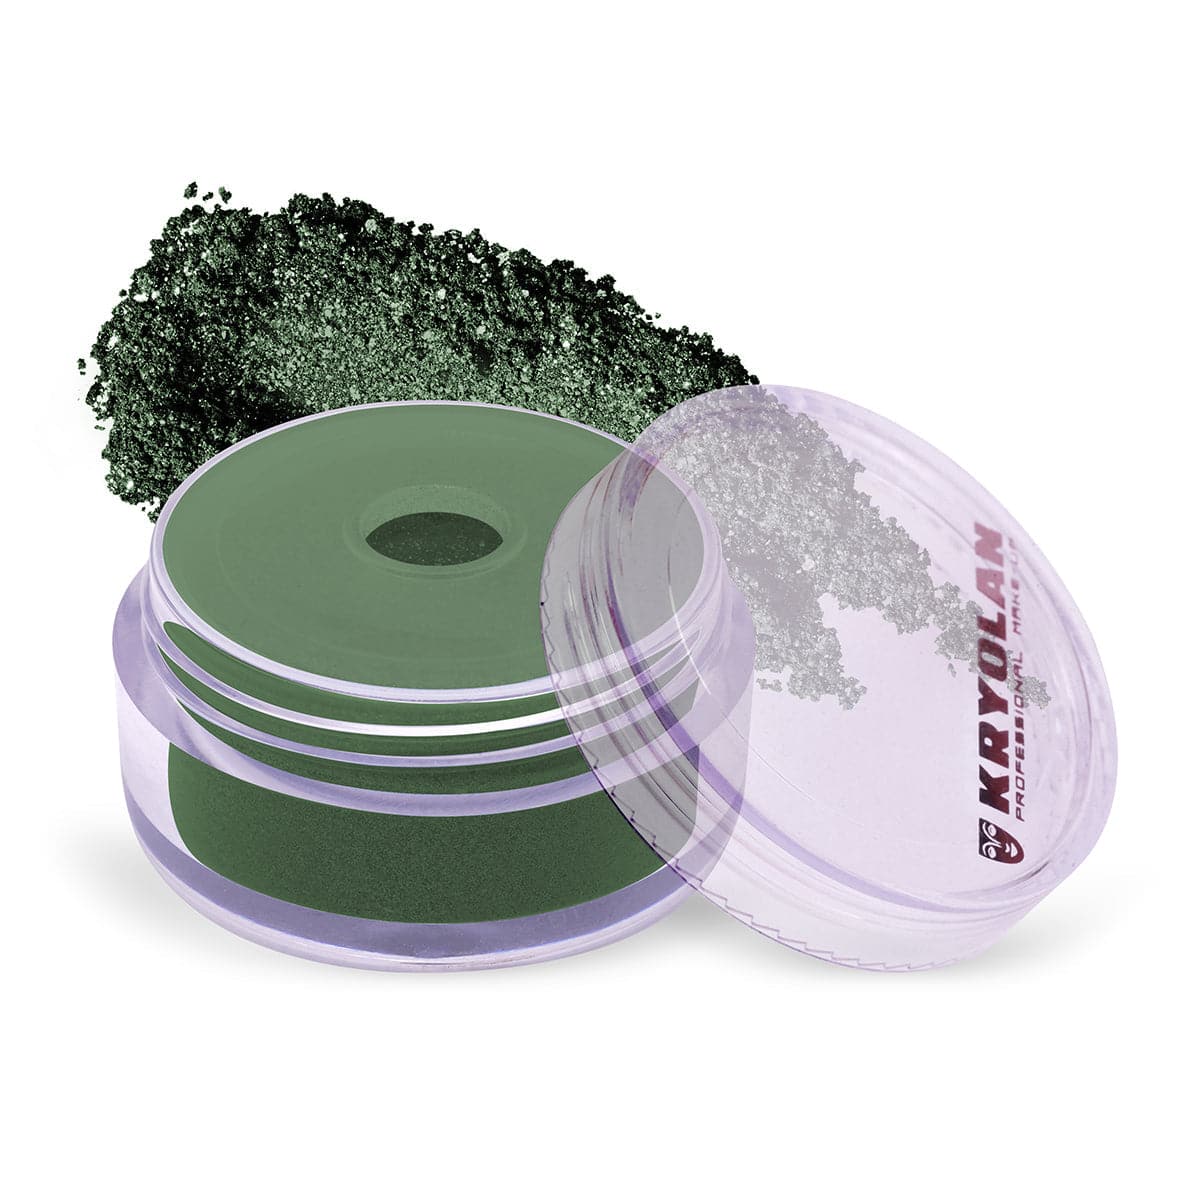 Kryolan Satin Powder - 657 Dark Green - Premium Health & Beauty from Kryolan - Just Rs 2730.00! Shop now at Cozmetica